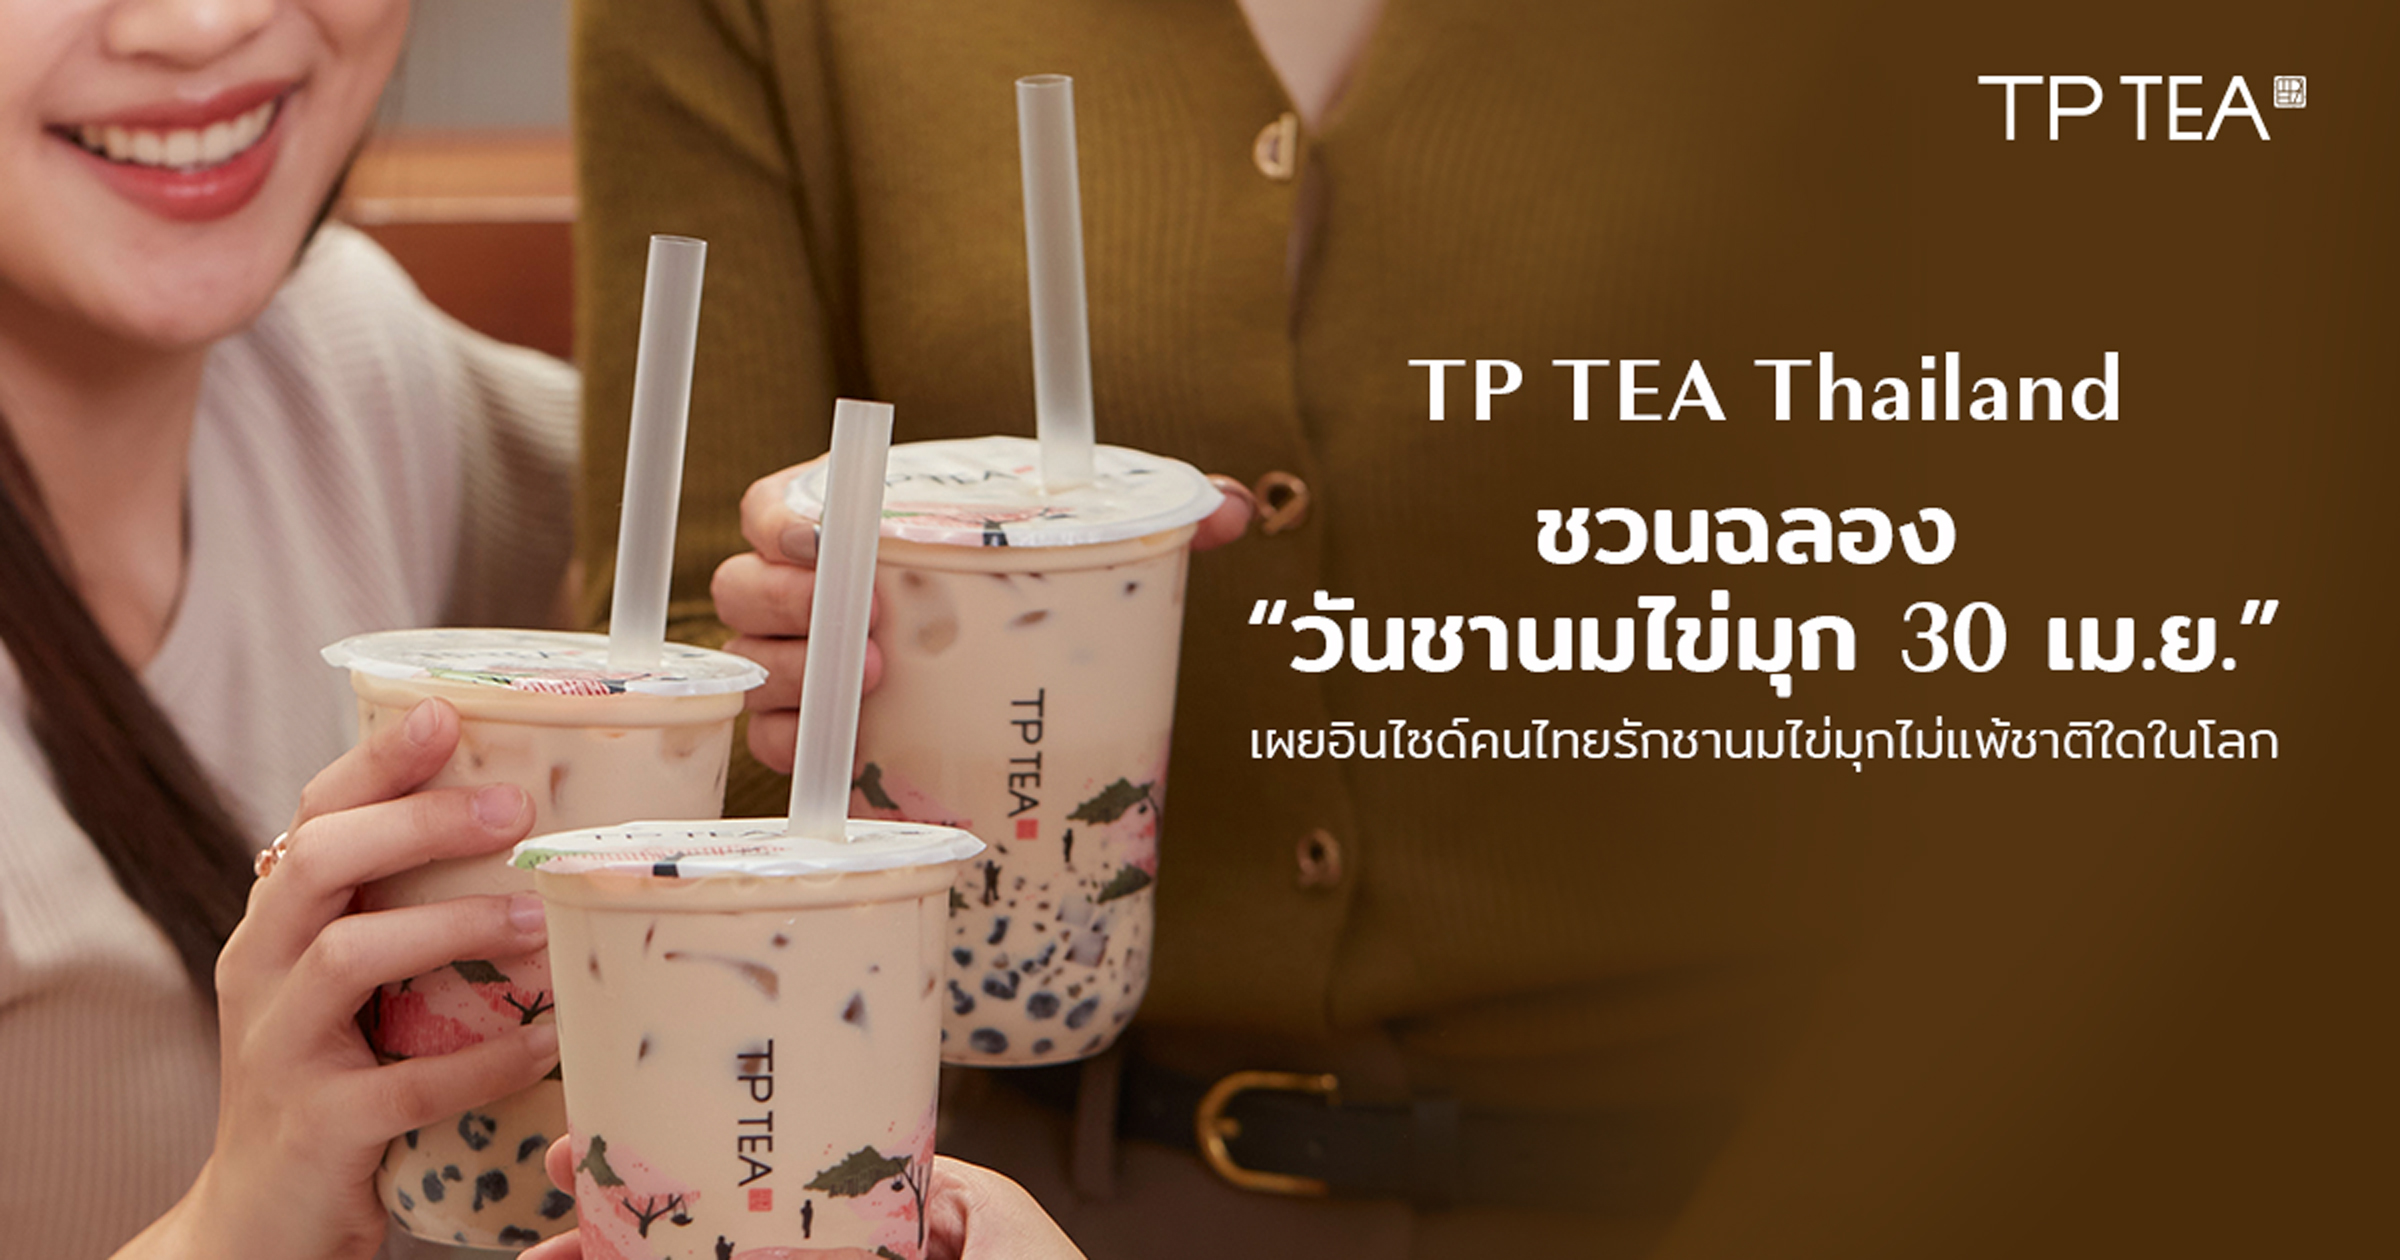 TP TEA Thailand ชวนฉลอง “วันชานมไข่มุก 30 เม.ย.” เผยอินไซด์คนไทยรักชานมไข่มุกไม่แพ้ชาติใดในโลก